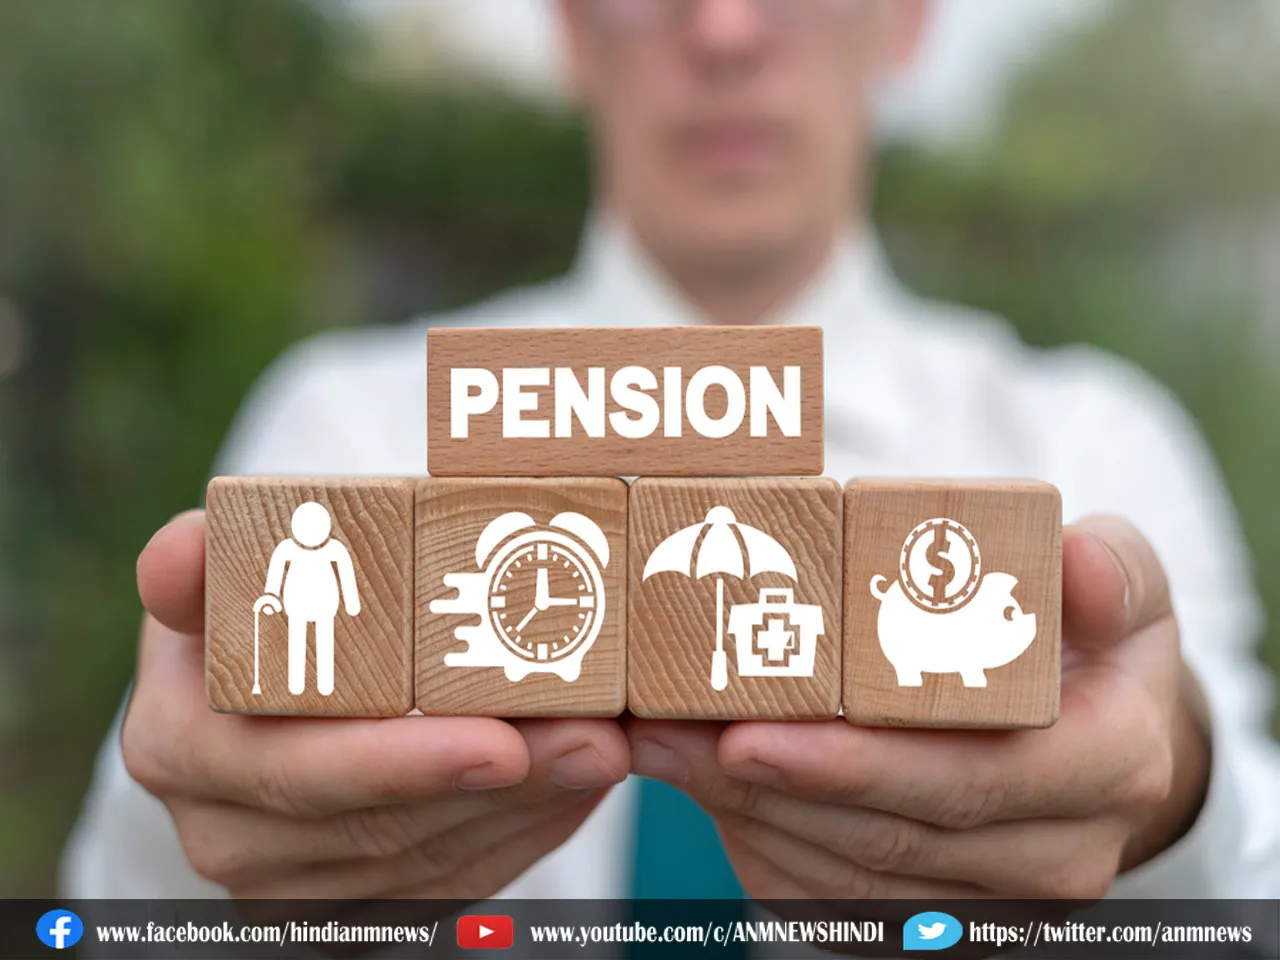 Pension Plan: रिटायरमेंट के बाद 25000 का मासिक पेंशन चाहिए? जानें कितना करना होगा निवेश